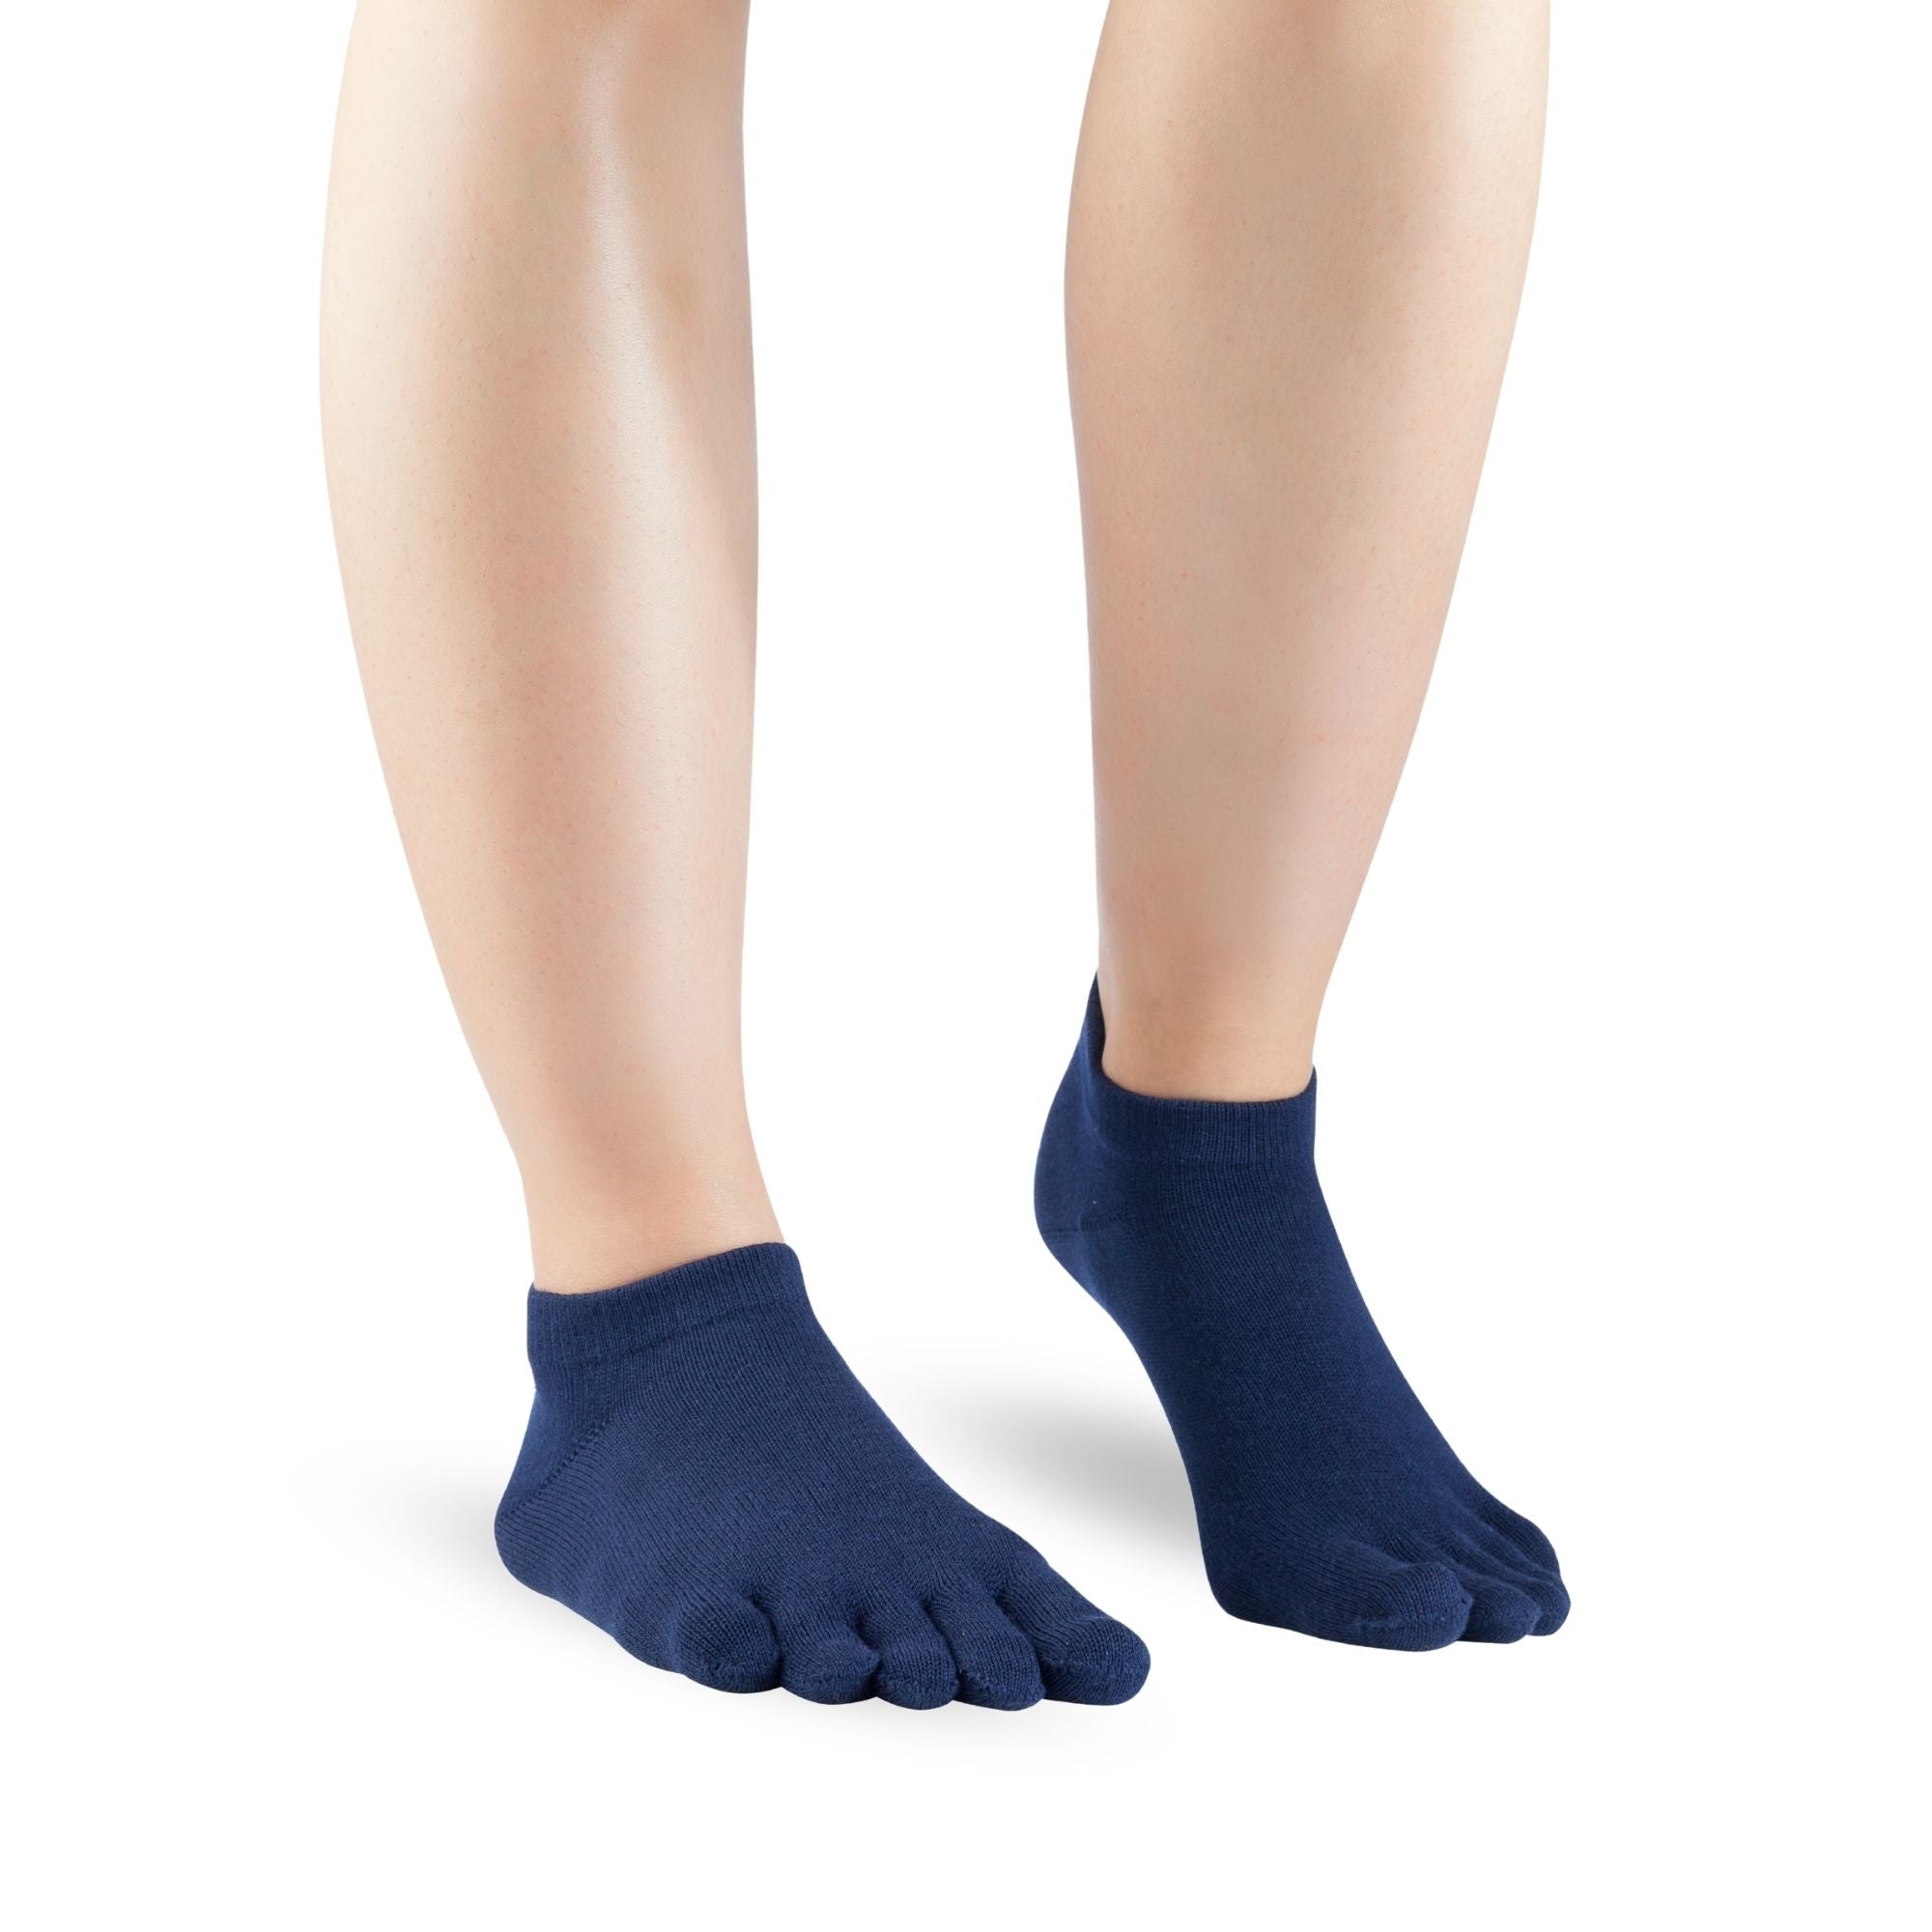 Knitido Sneaker in cotone Everyday Essentials calze con dita da indossare tutti i giorni, in molti colori.